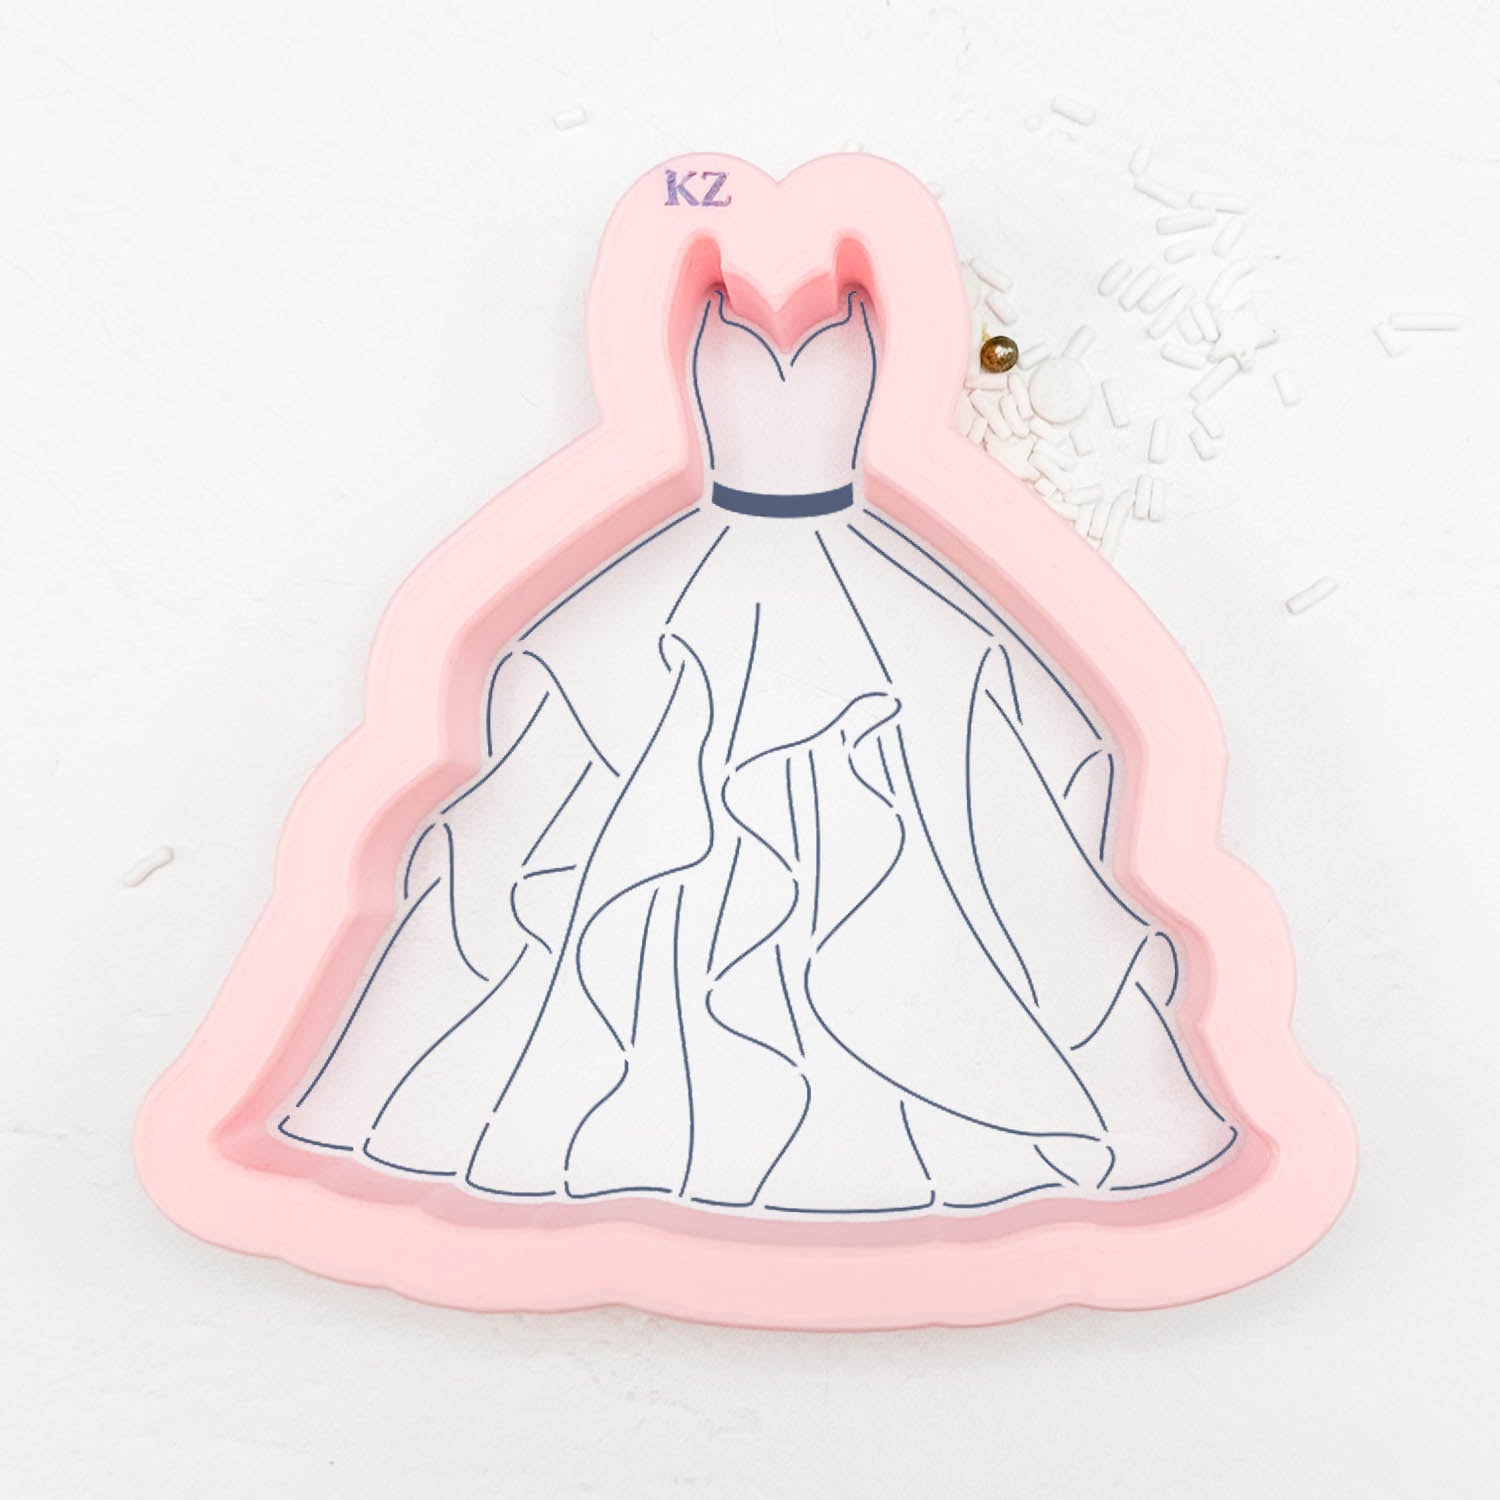 The Marilyn Wedding Dress Cutter/Stencil